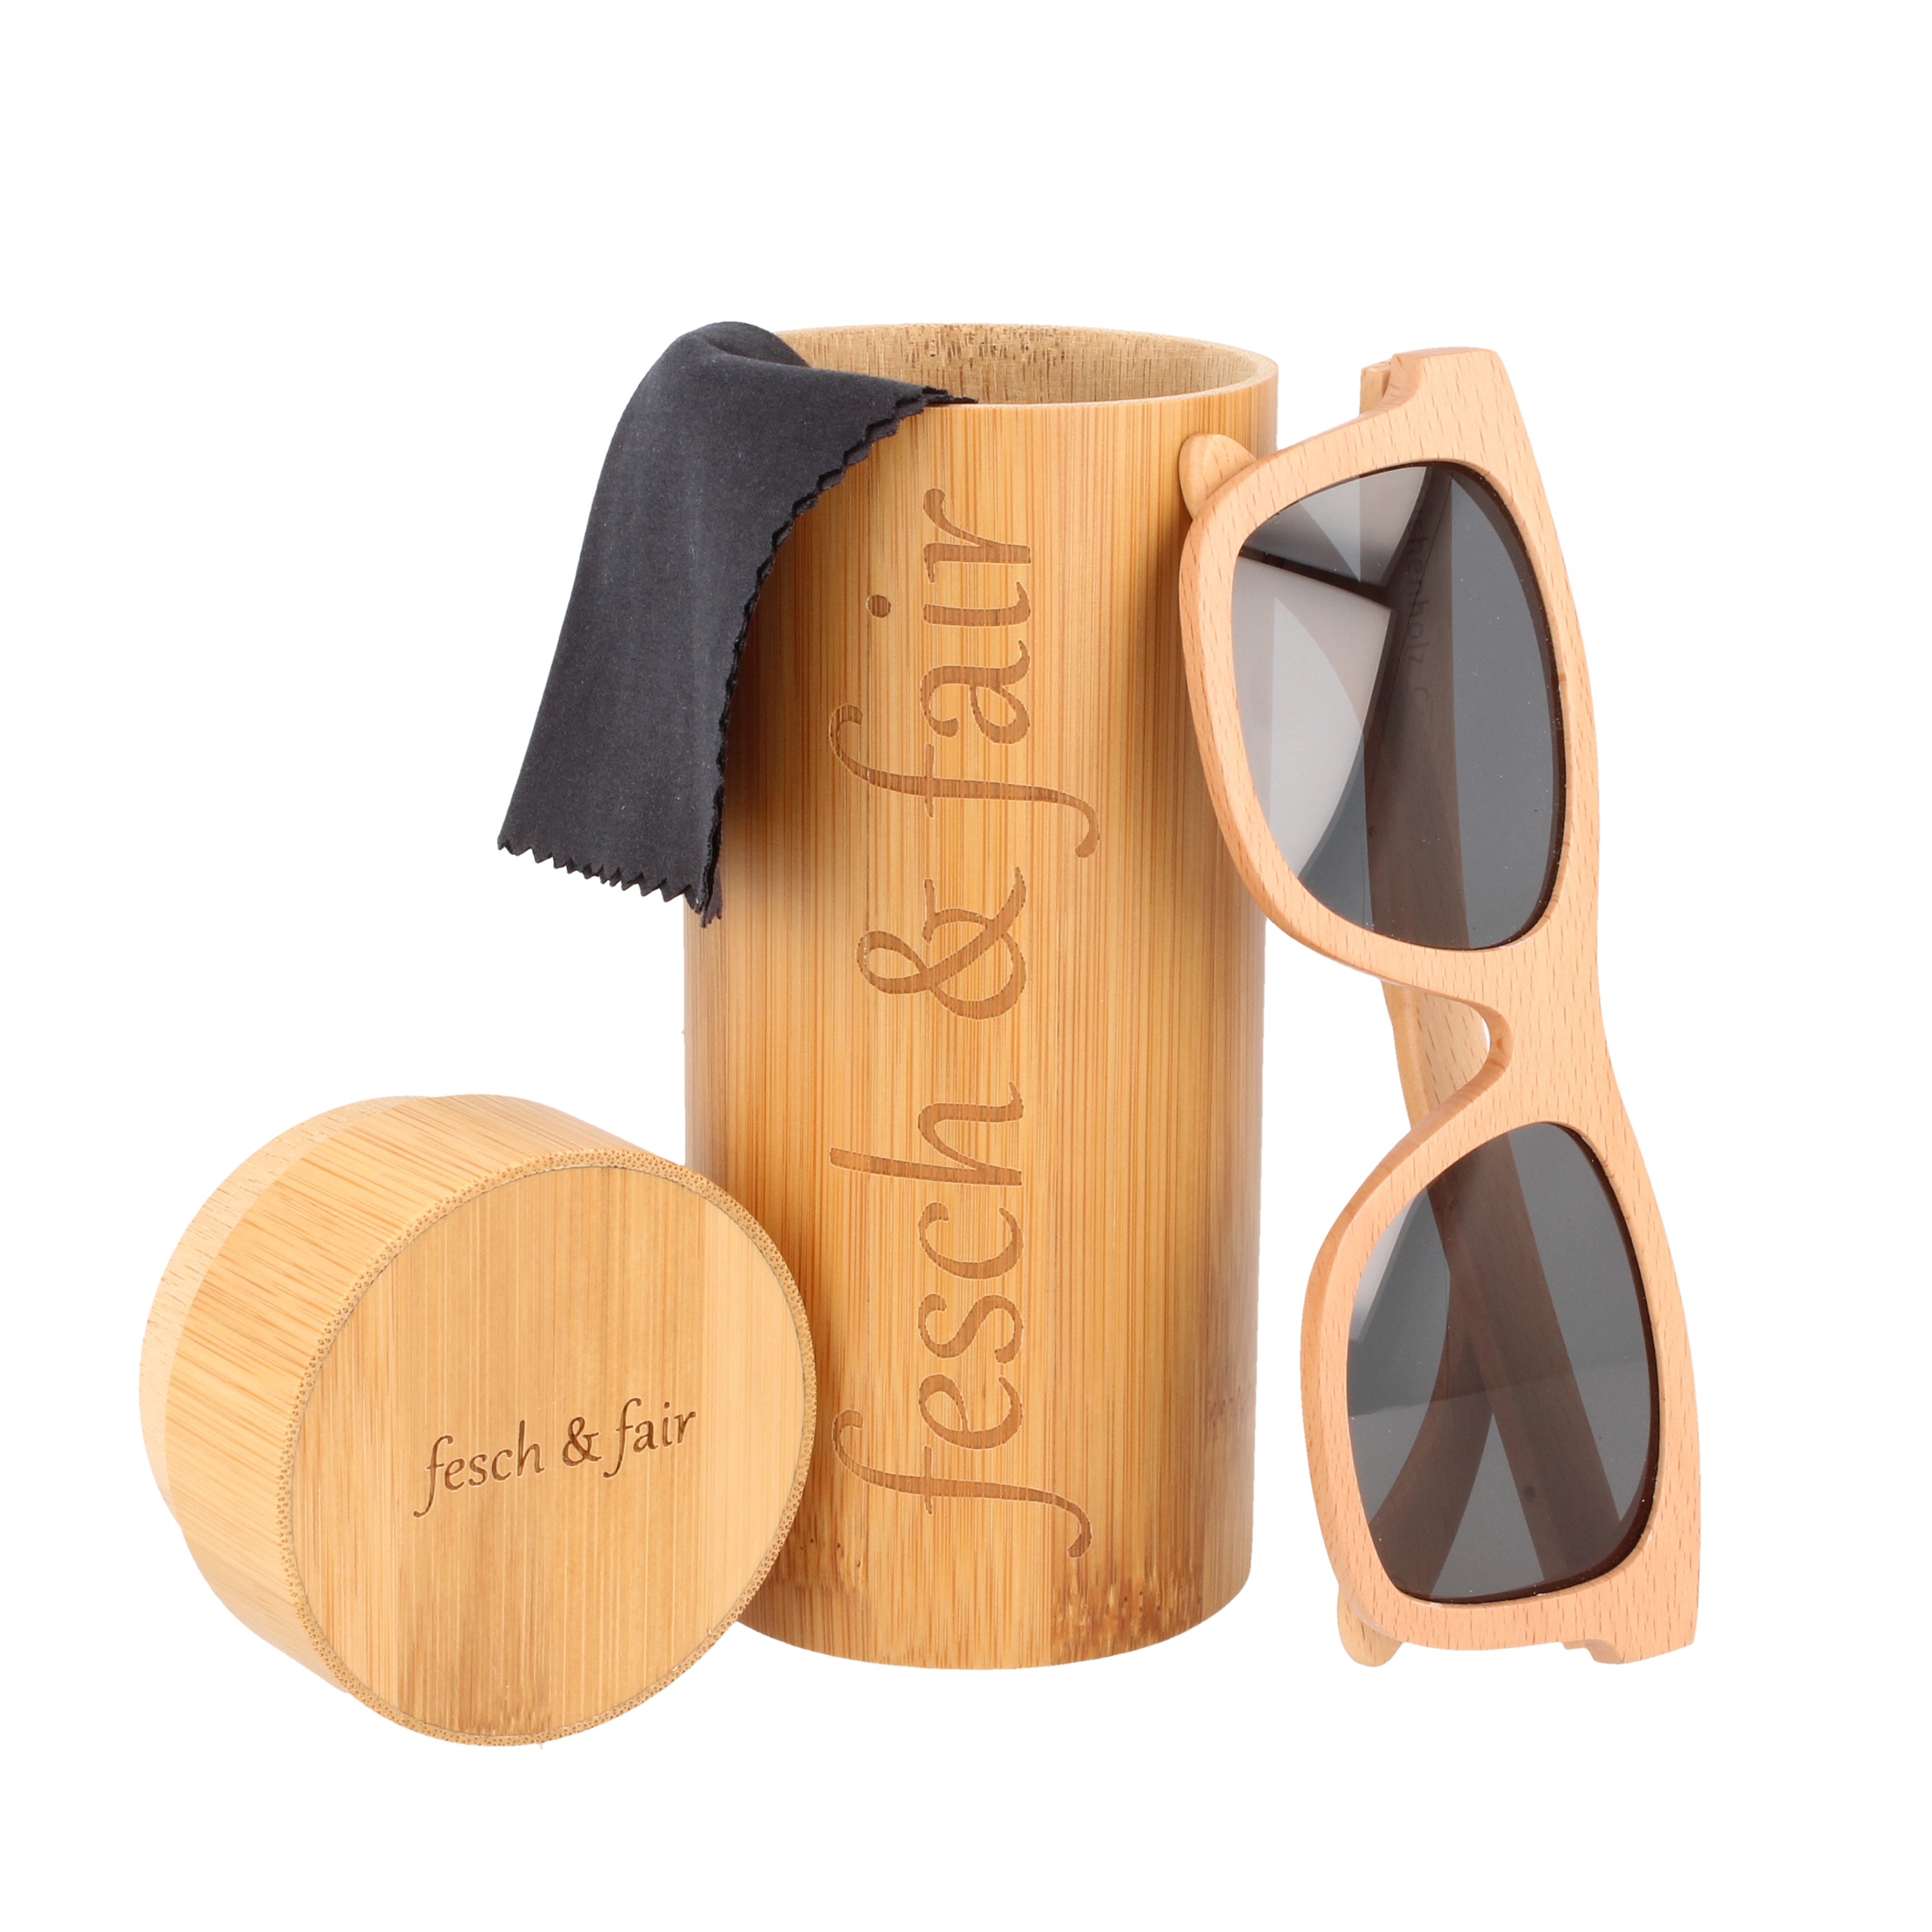 Fesch & fair Sonnenbrille aus Buchenholz in einer Bambus-Geschenkbox